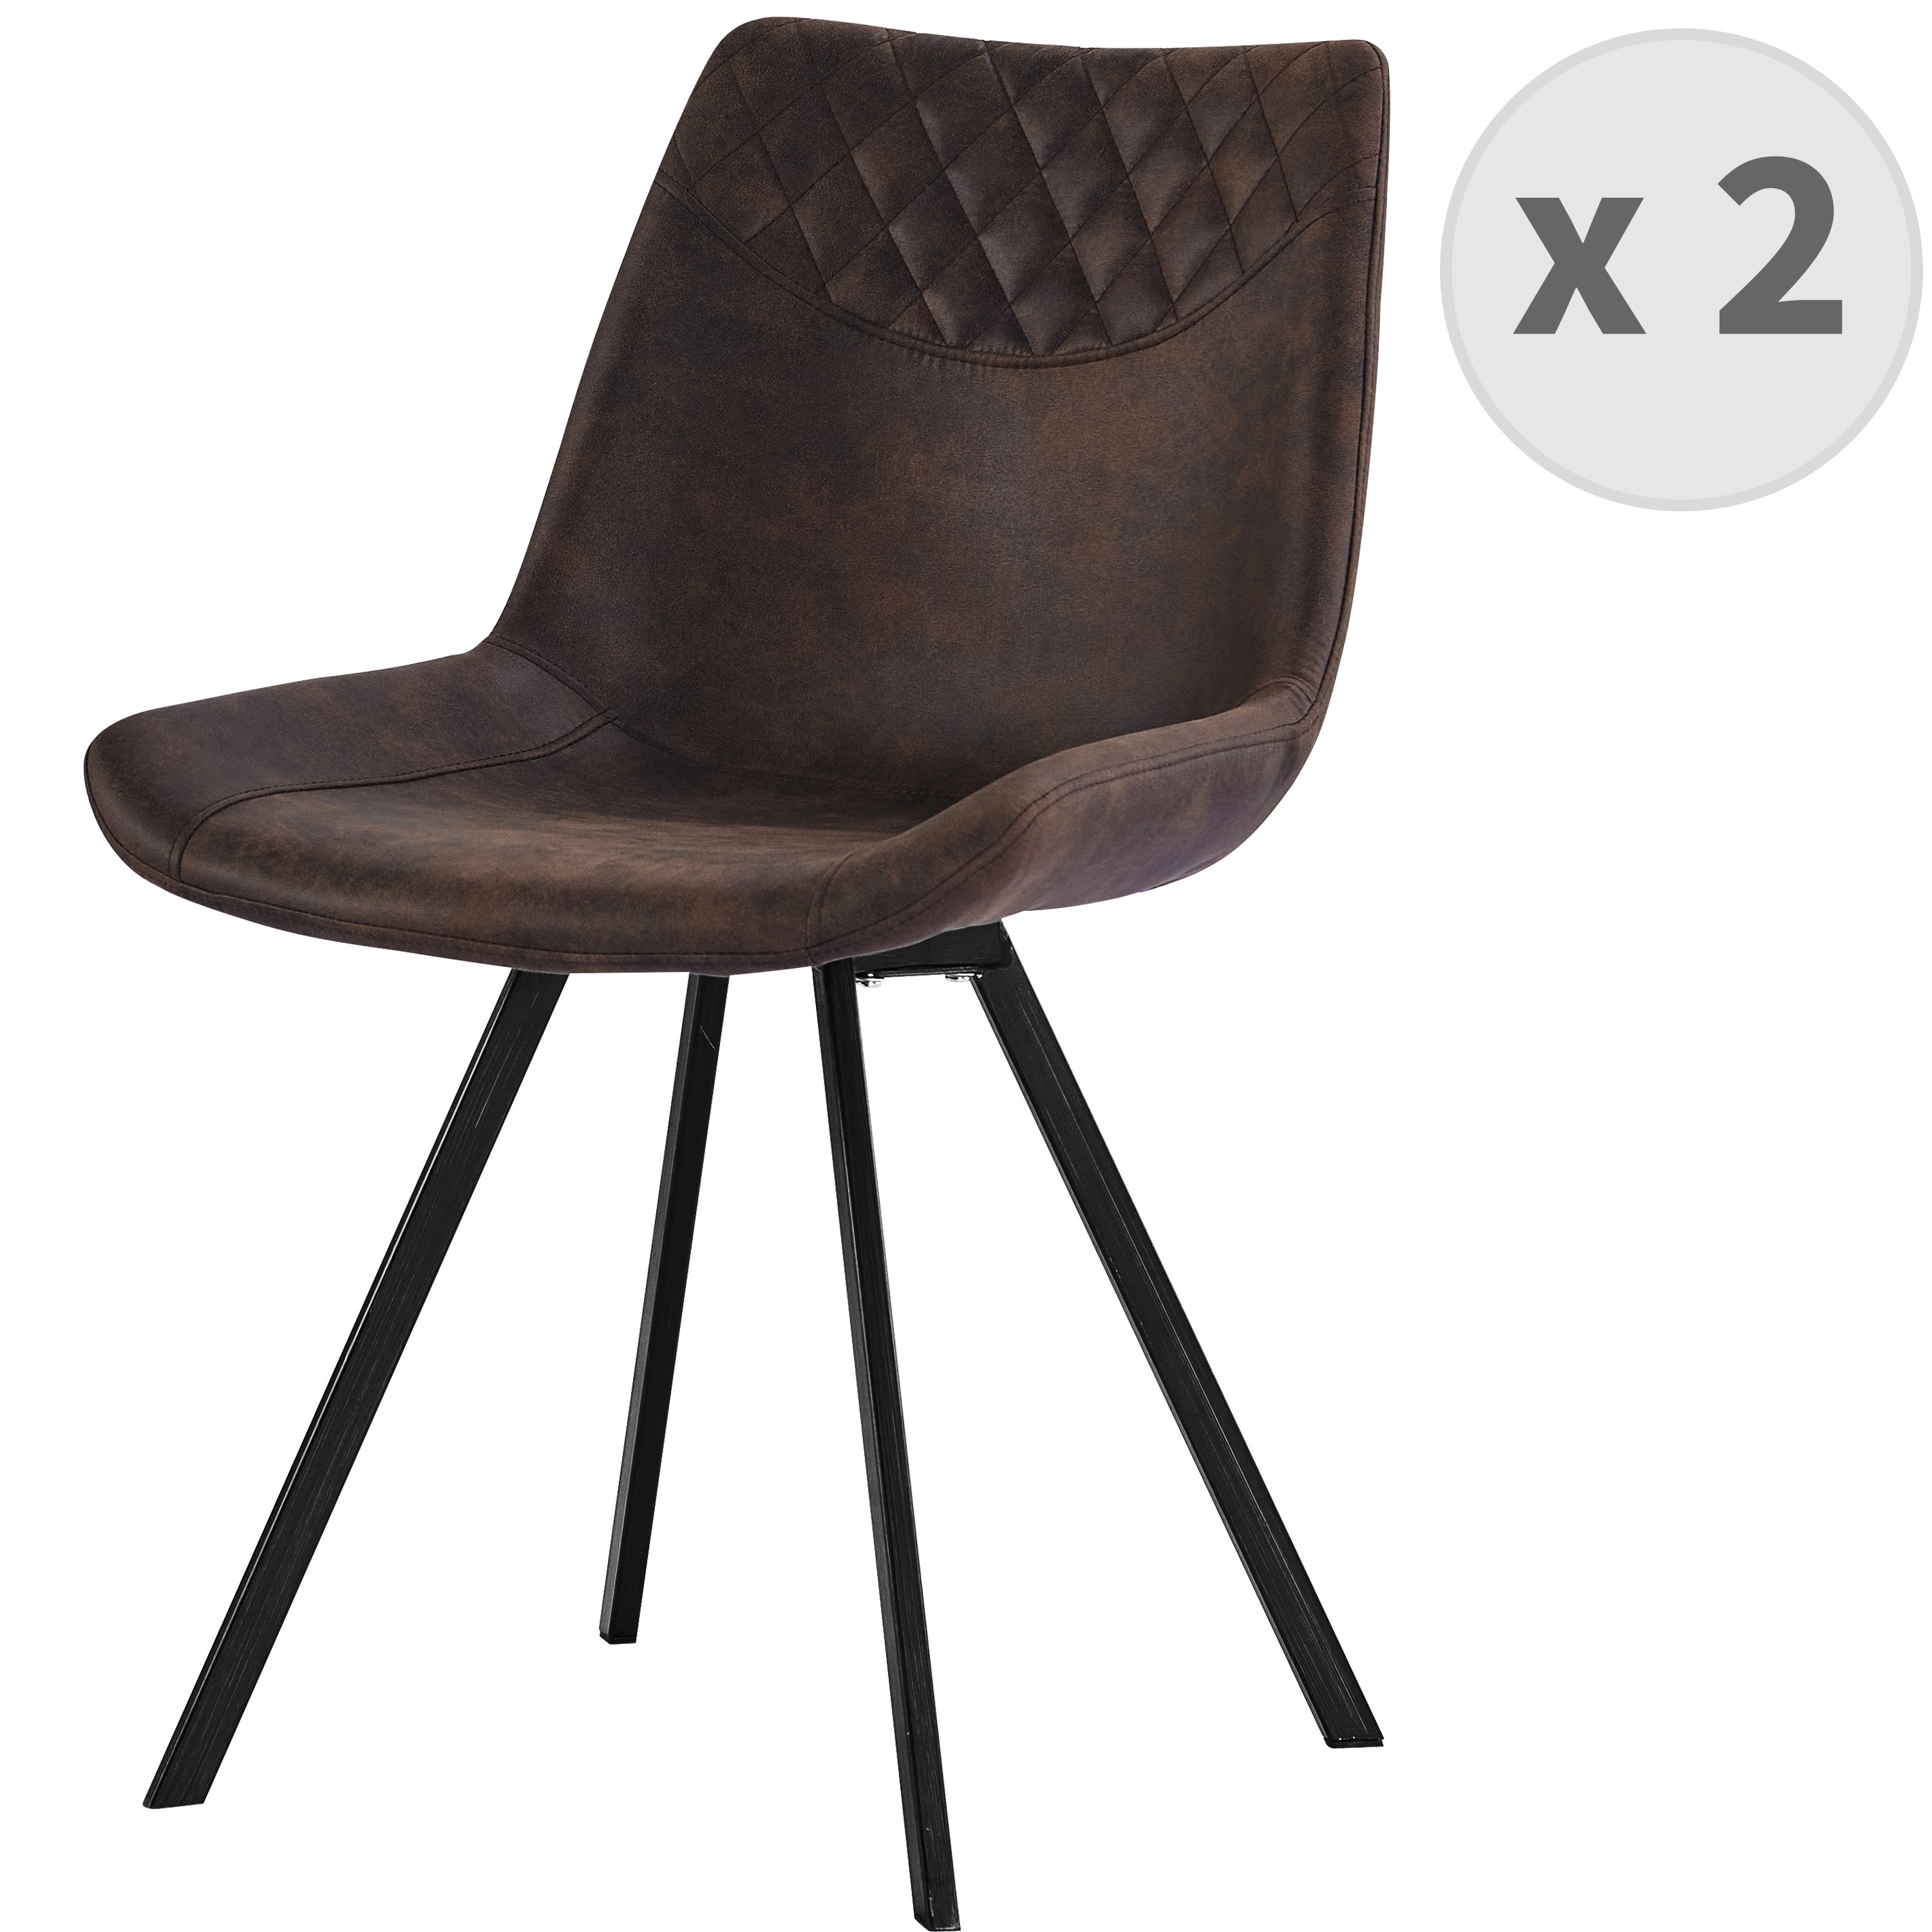 Chaise industrielle microfibre vintage café pieds métal noir (x2)